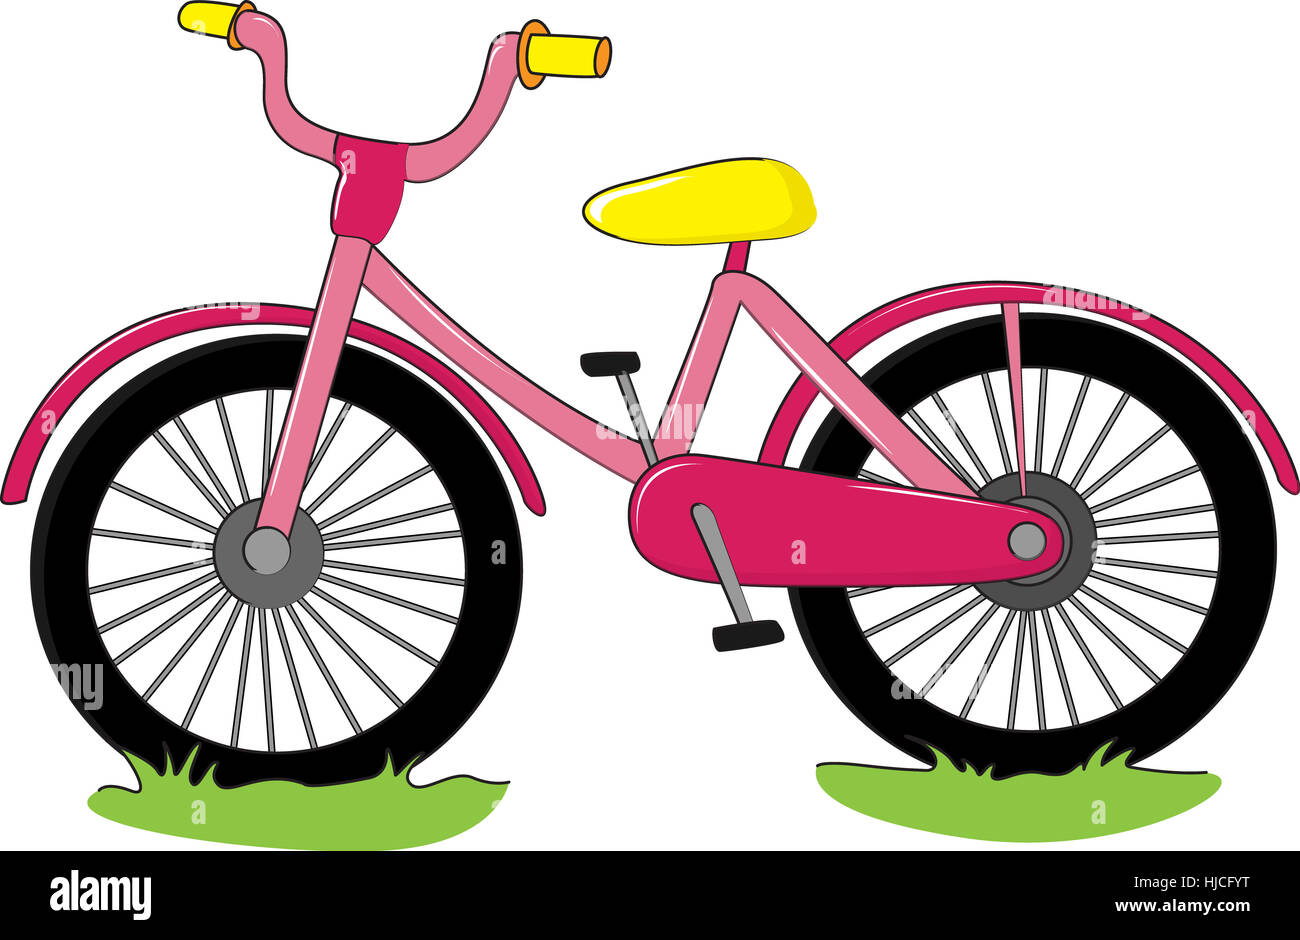 Велосипед cartoon